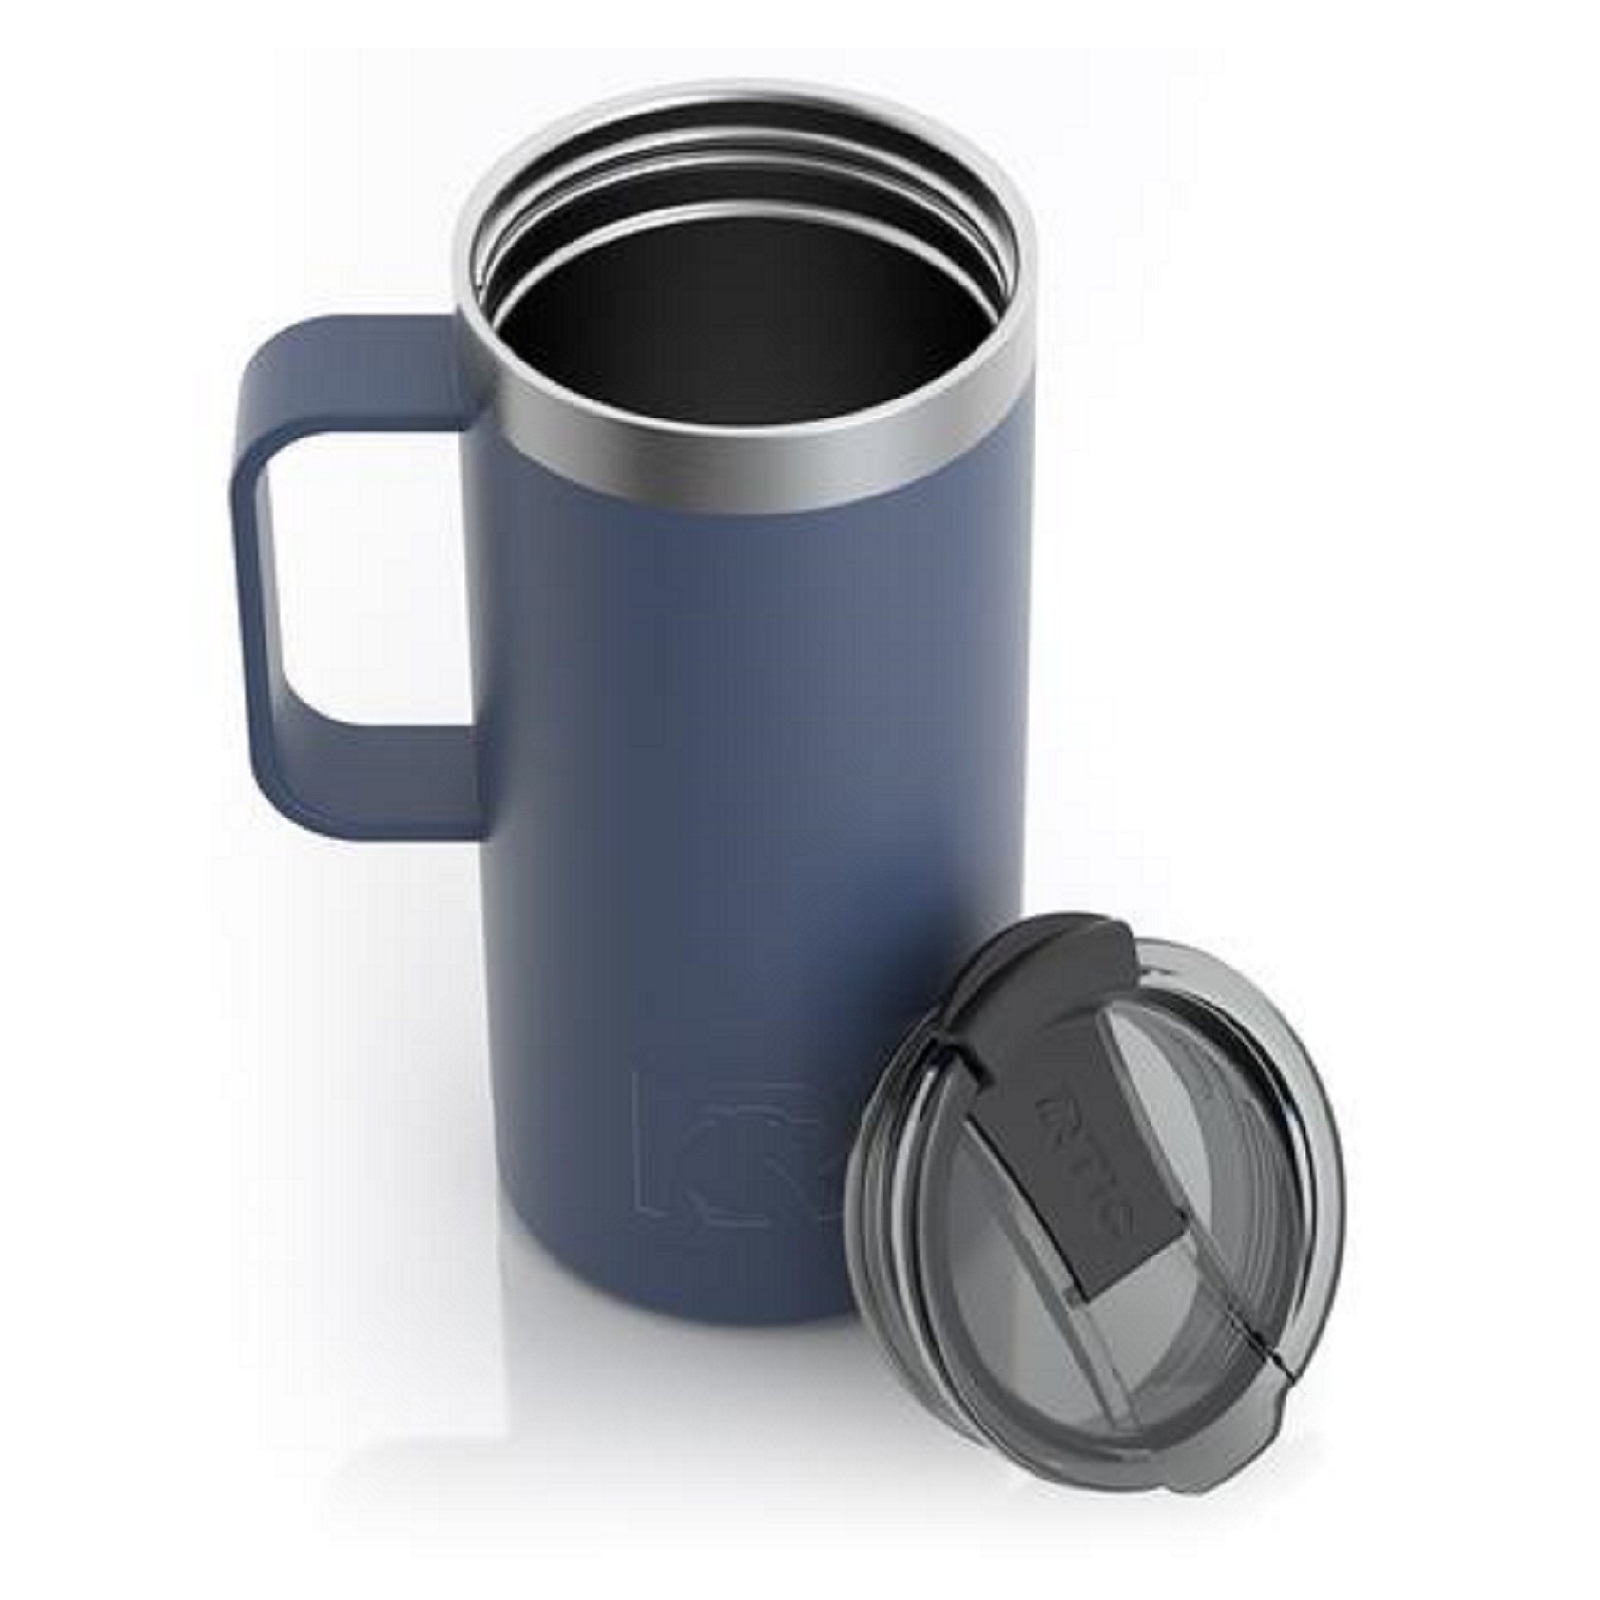 rtic coffee travel mug